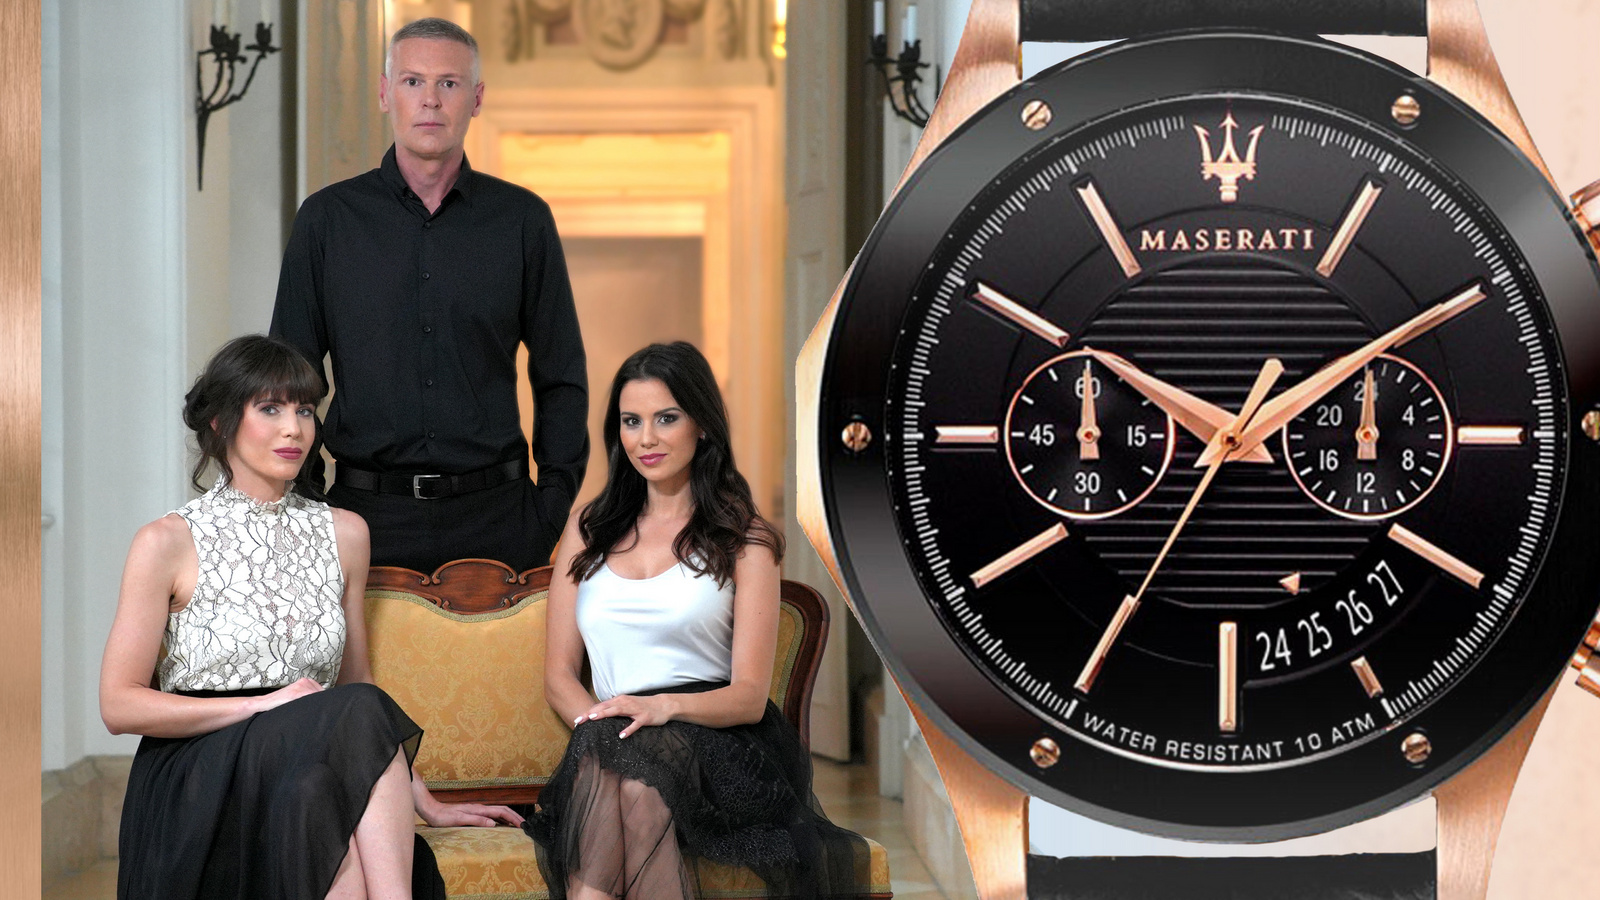 Maserati Watch and Tordai Istvan